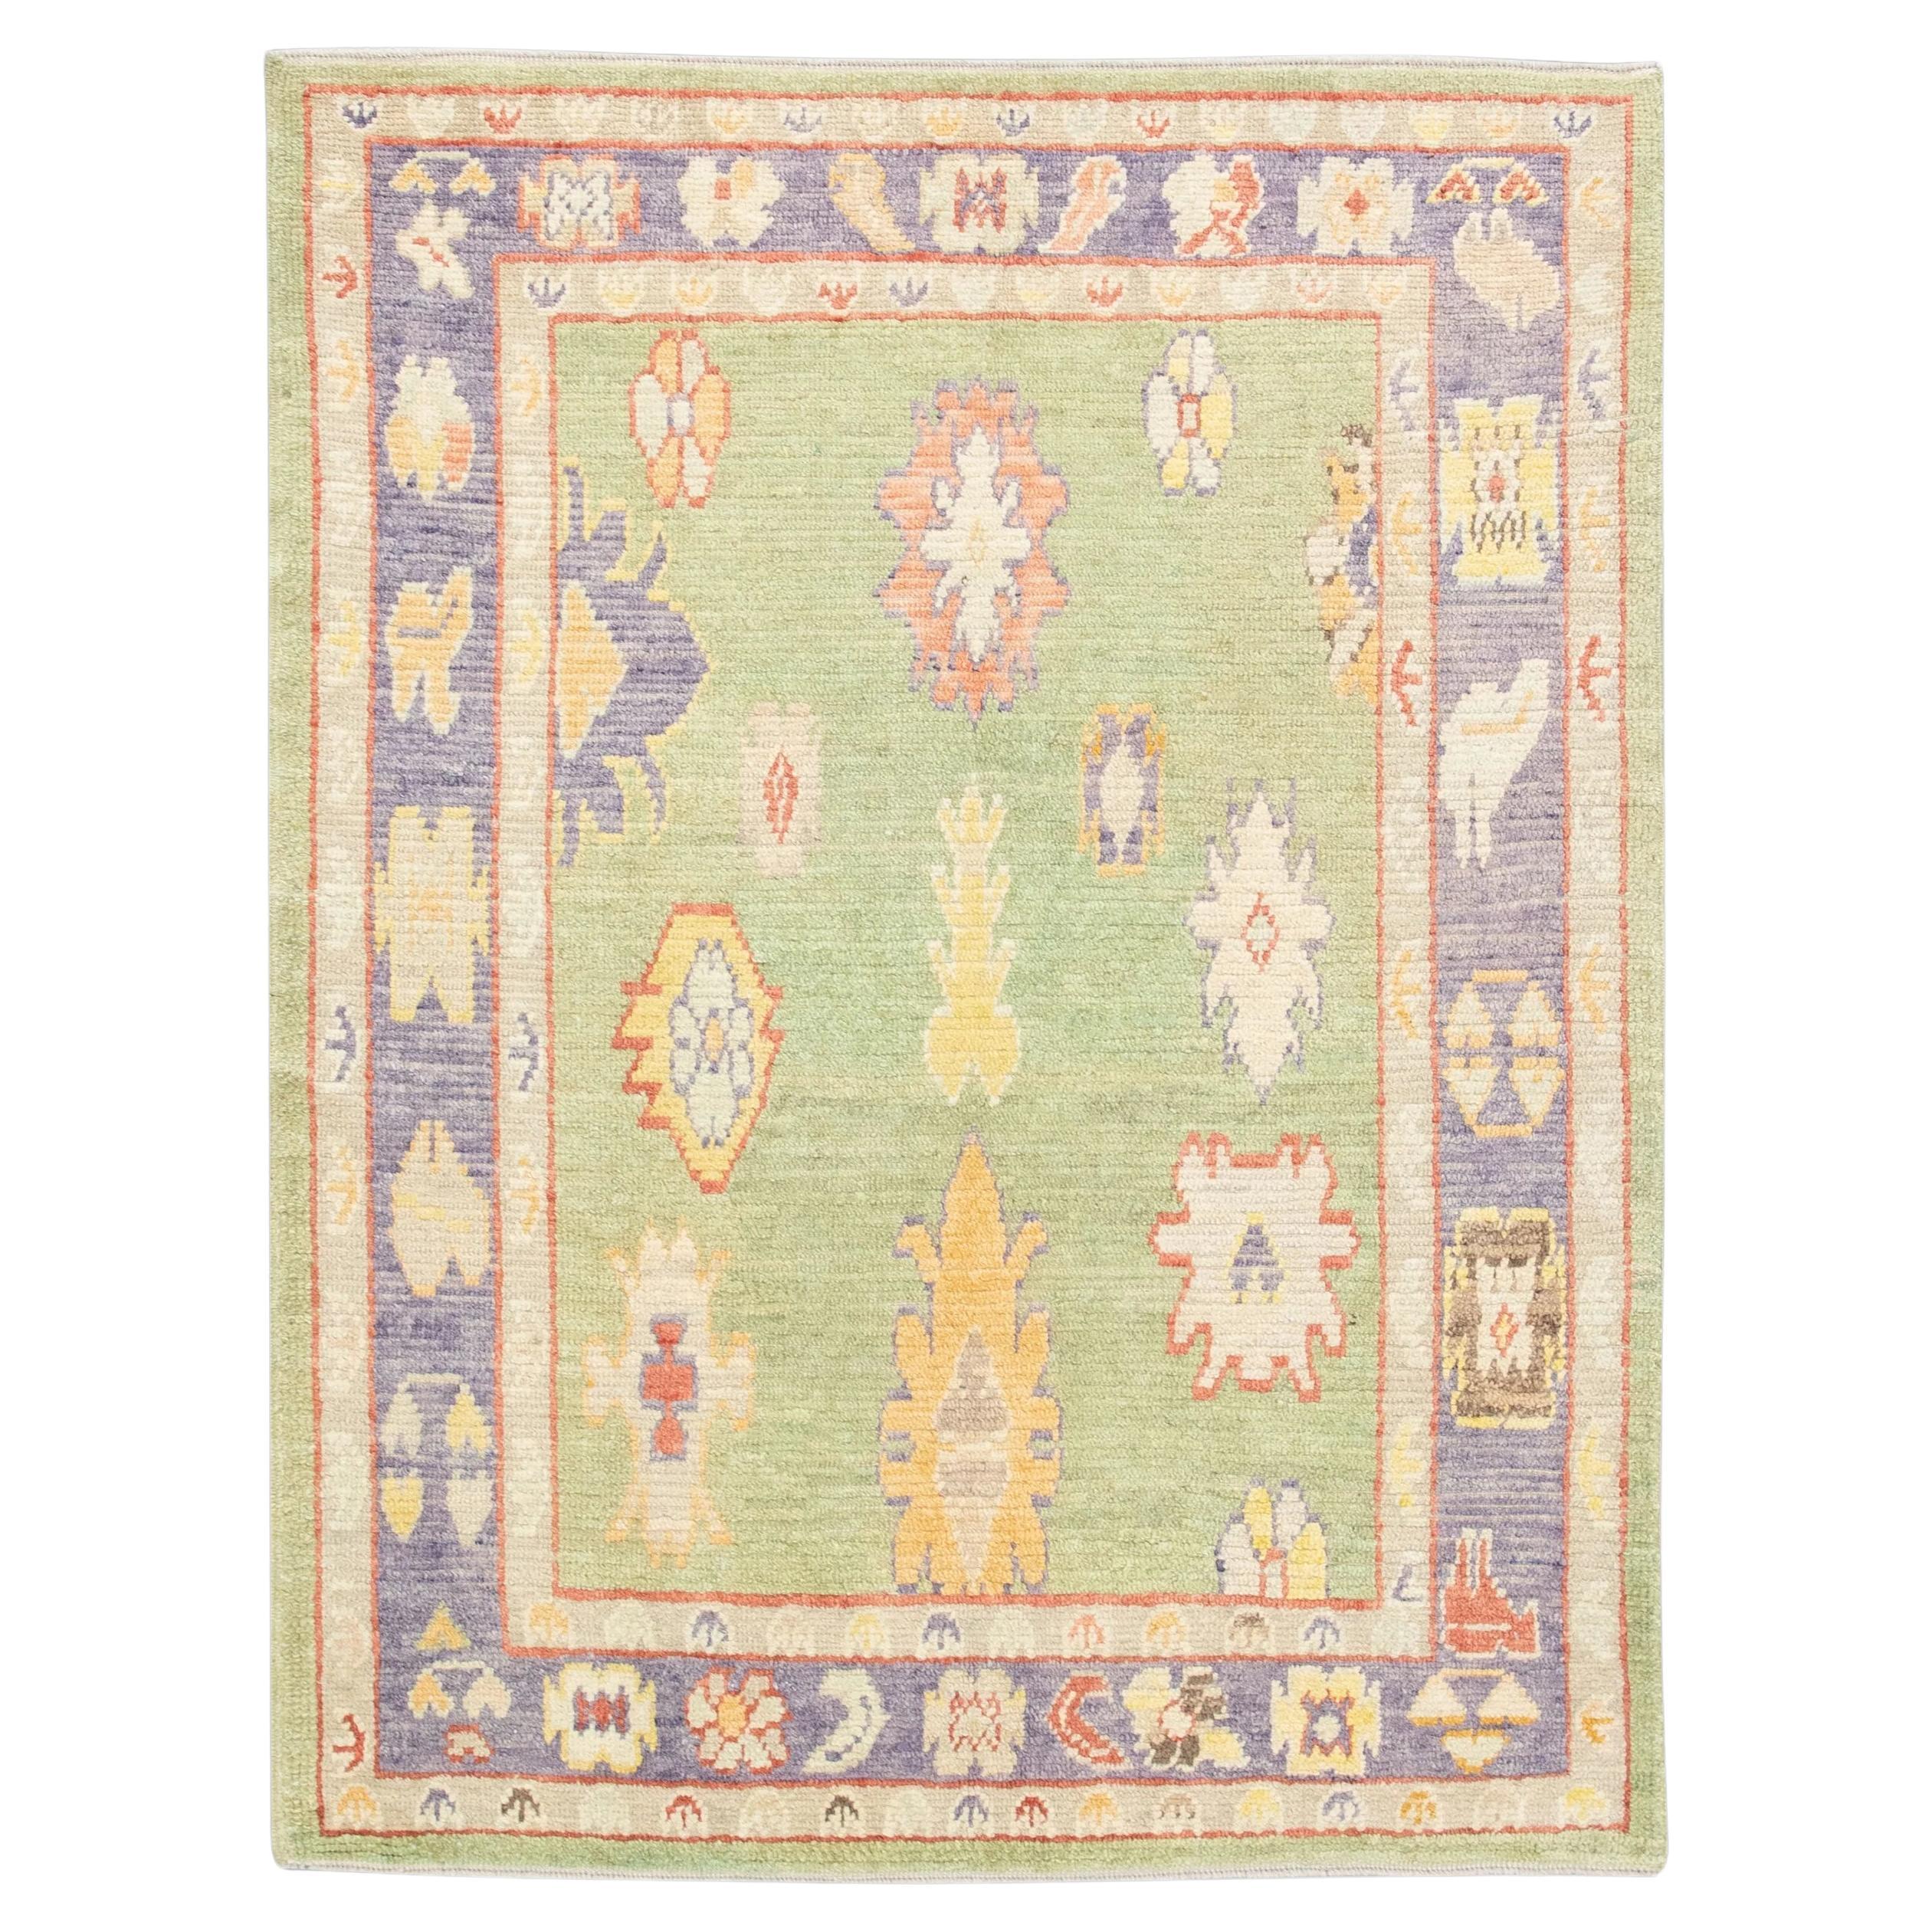 Handwoven Wool Carpet Turkish Oushak Rug 5'6" x 7'7" #4590